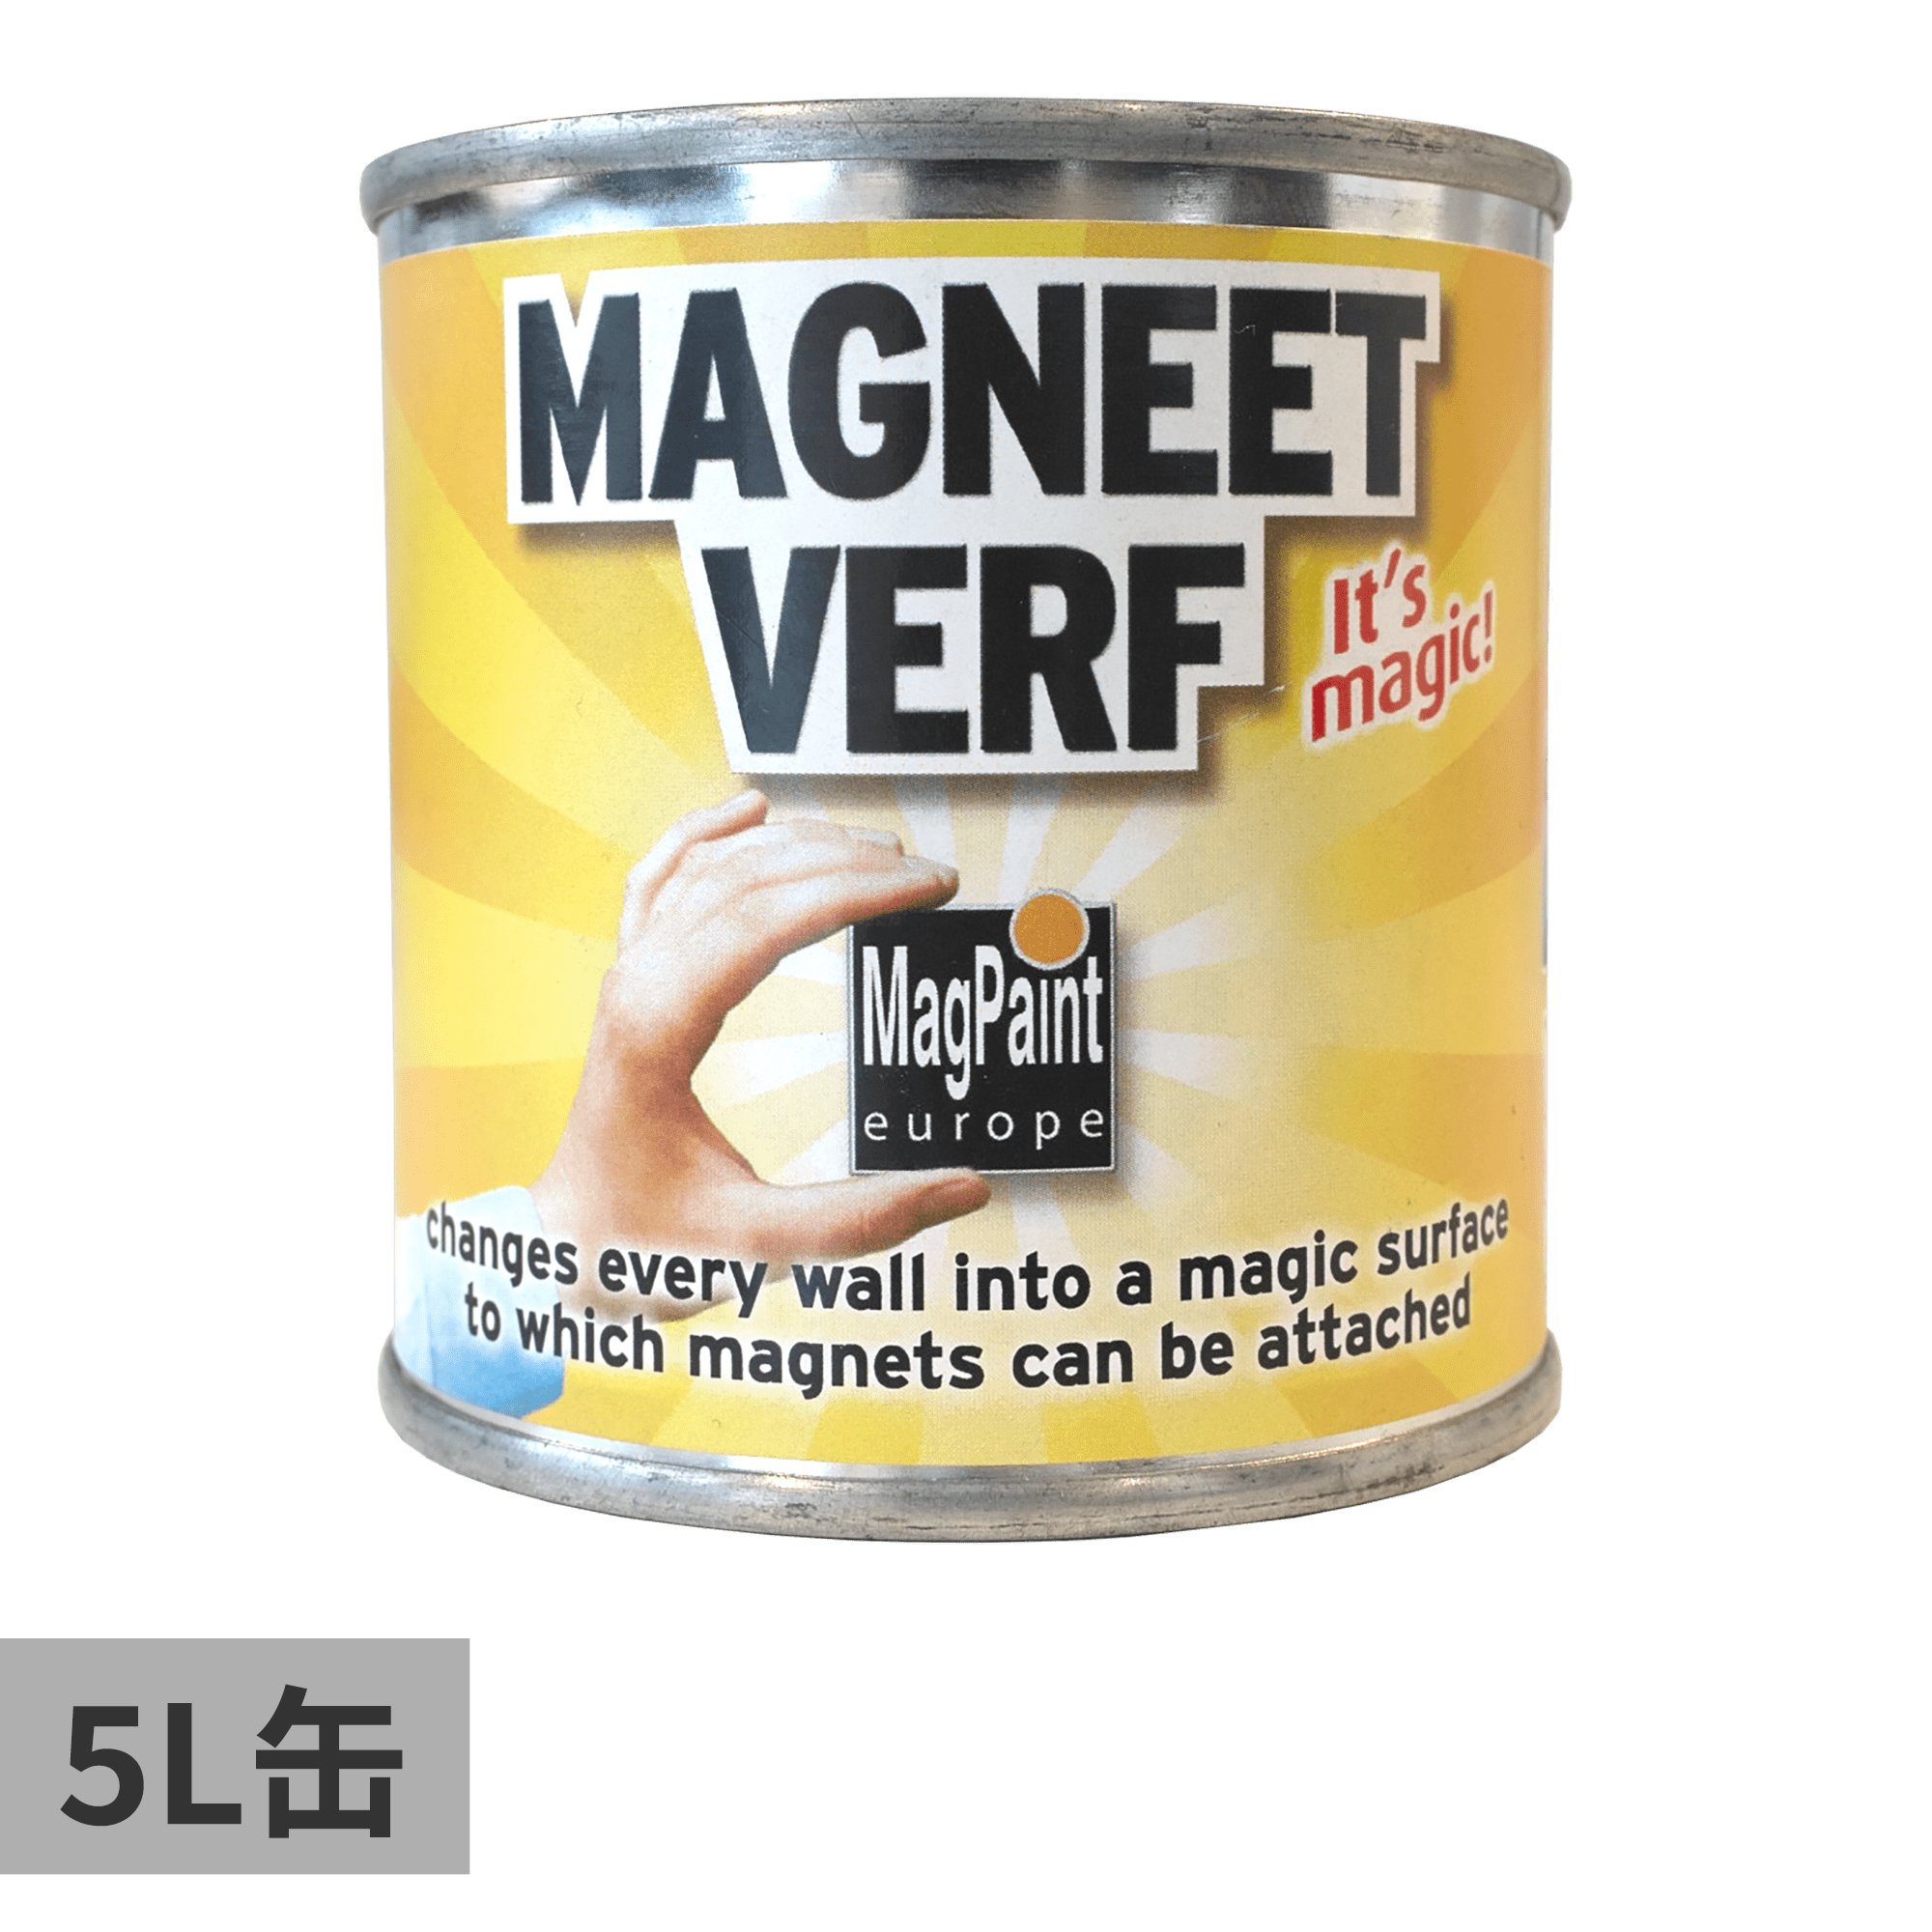 マグネット塗料 5L缶